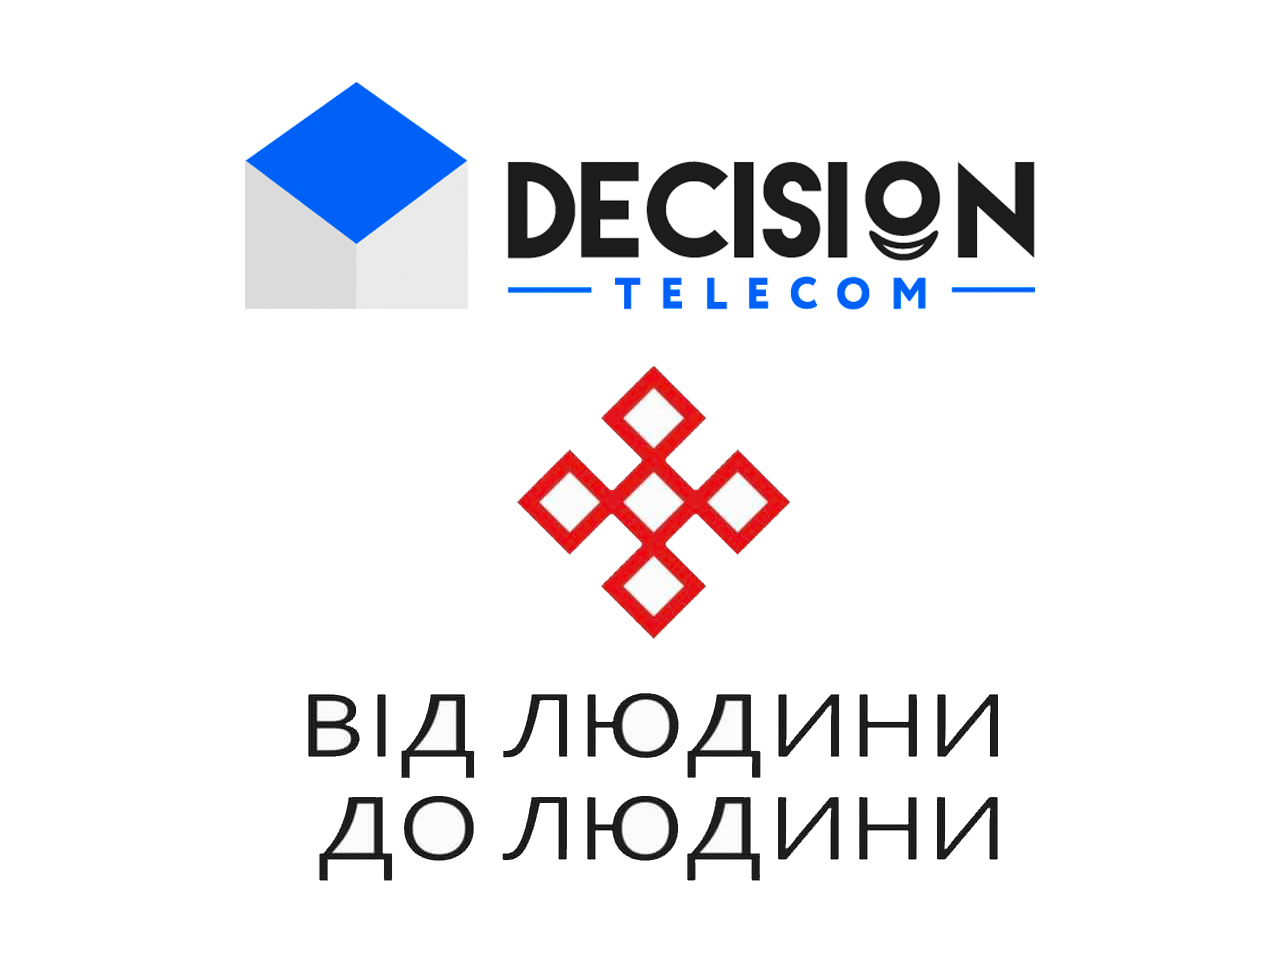 IT-Decision Telecom поддерживает Украину!